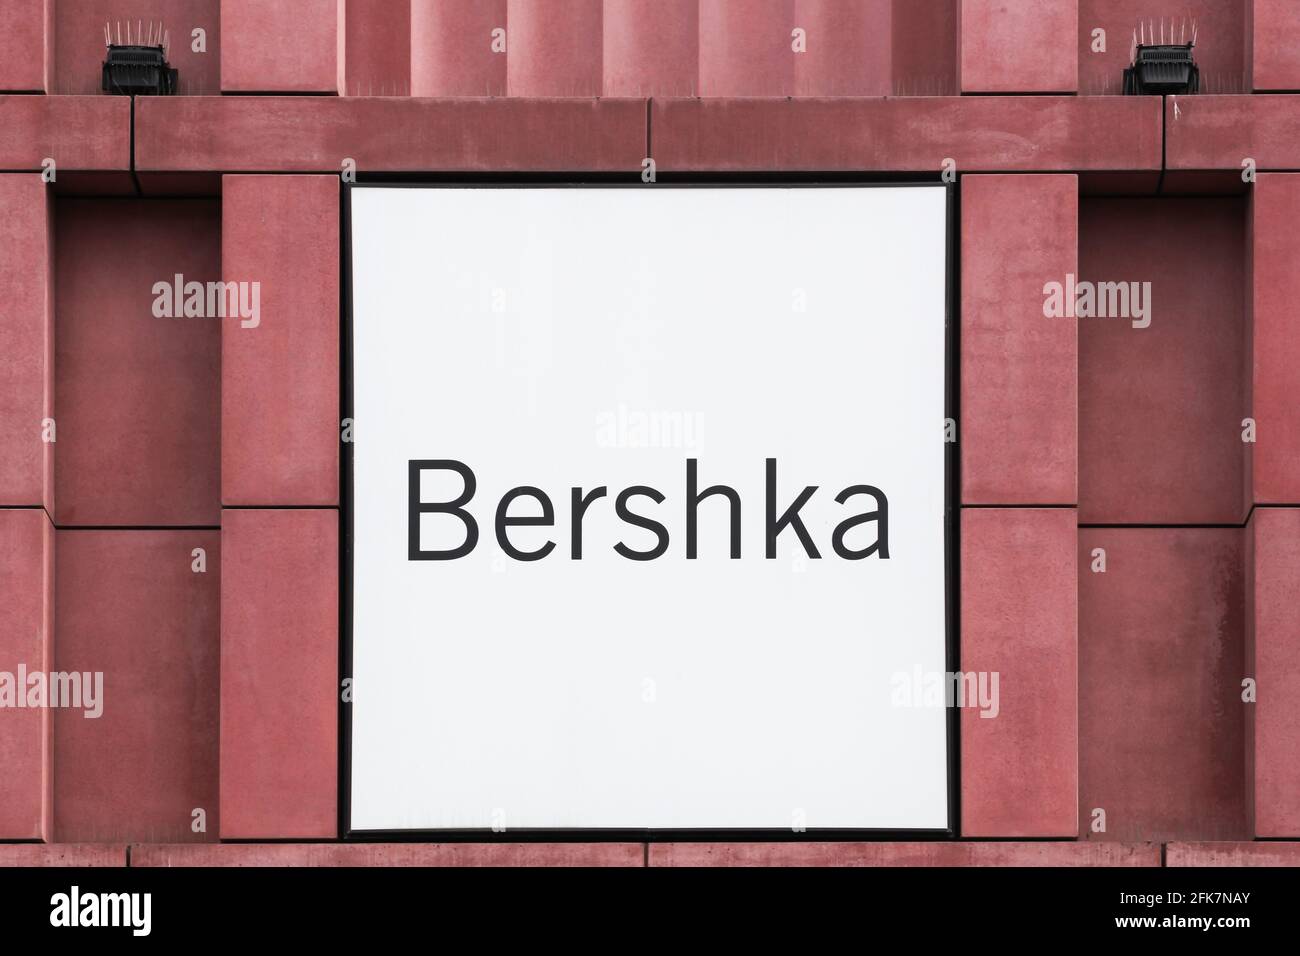 Berlin, Deutschland - 12. Juli 2020: Bershka-Logo an einer Wand. Bershka ist ein Bekleidungshandelsunternehmen. Es ist Teil der spanischen Inditex-Gruppe Stockfoto